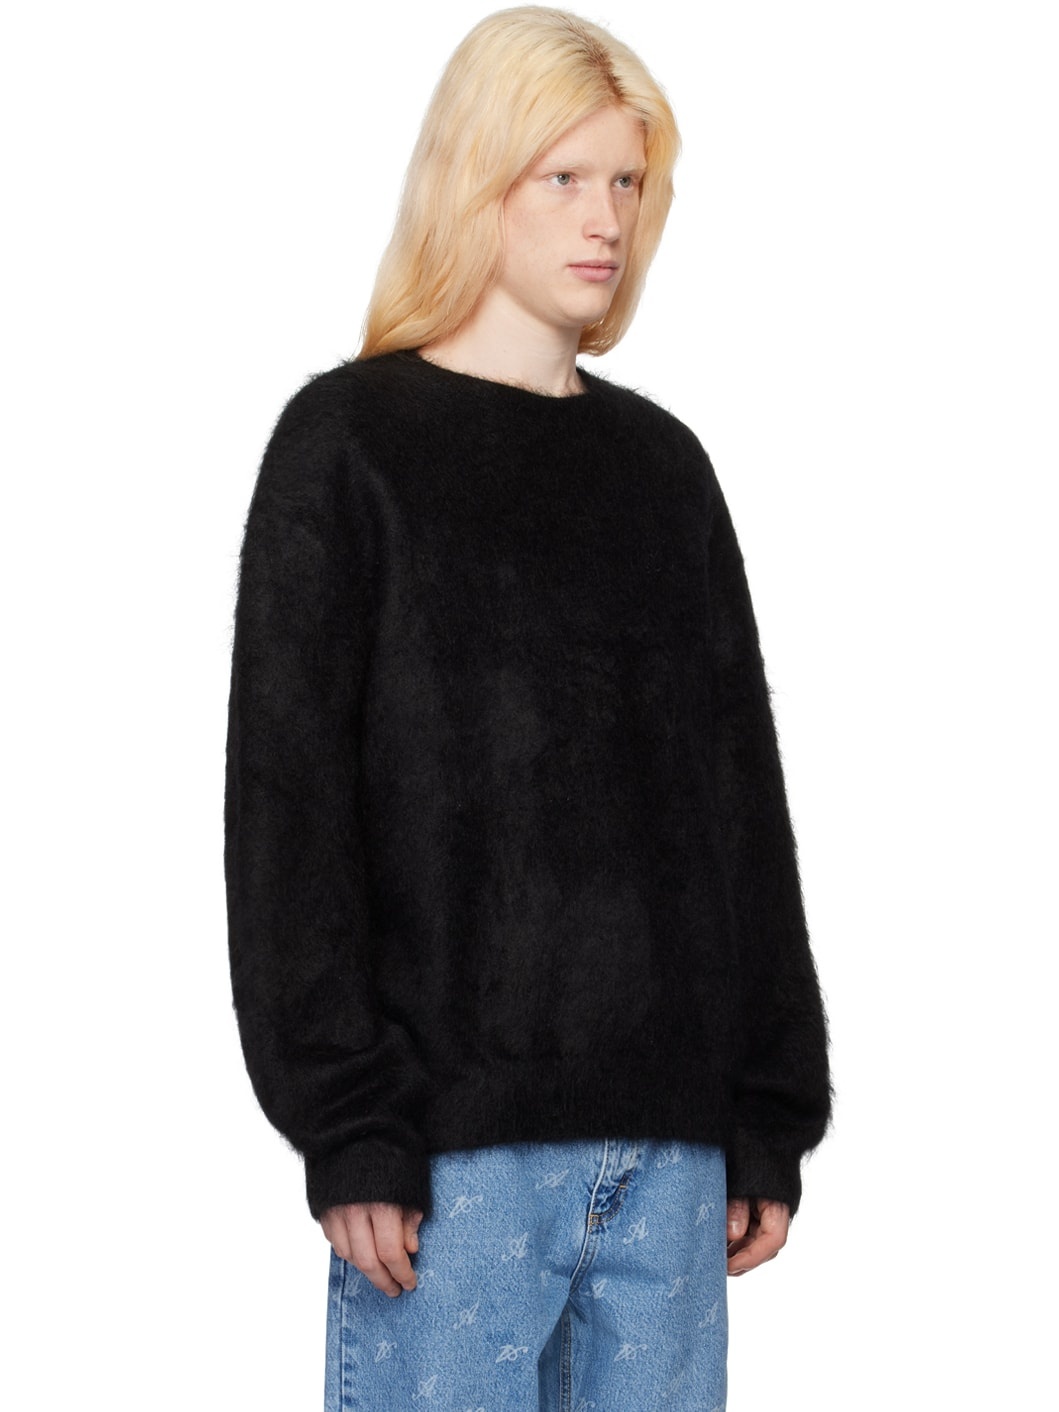 Black Primary Sweater - 2